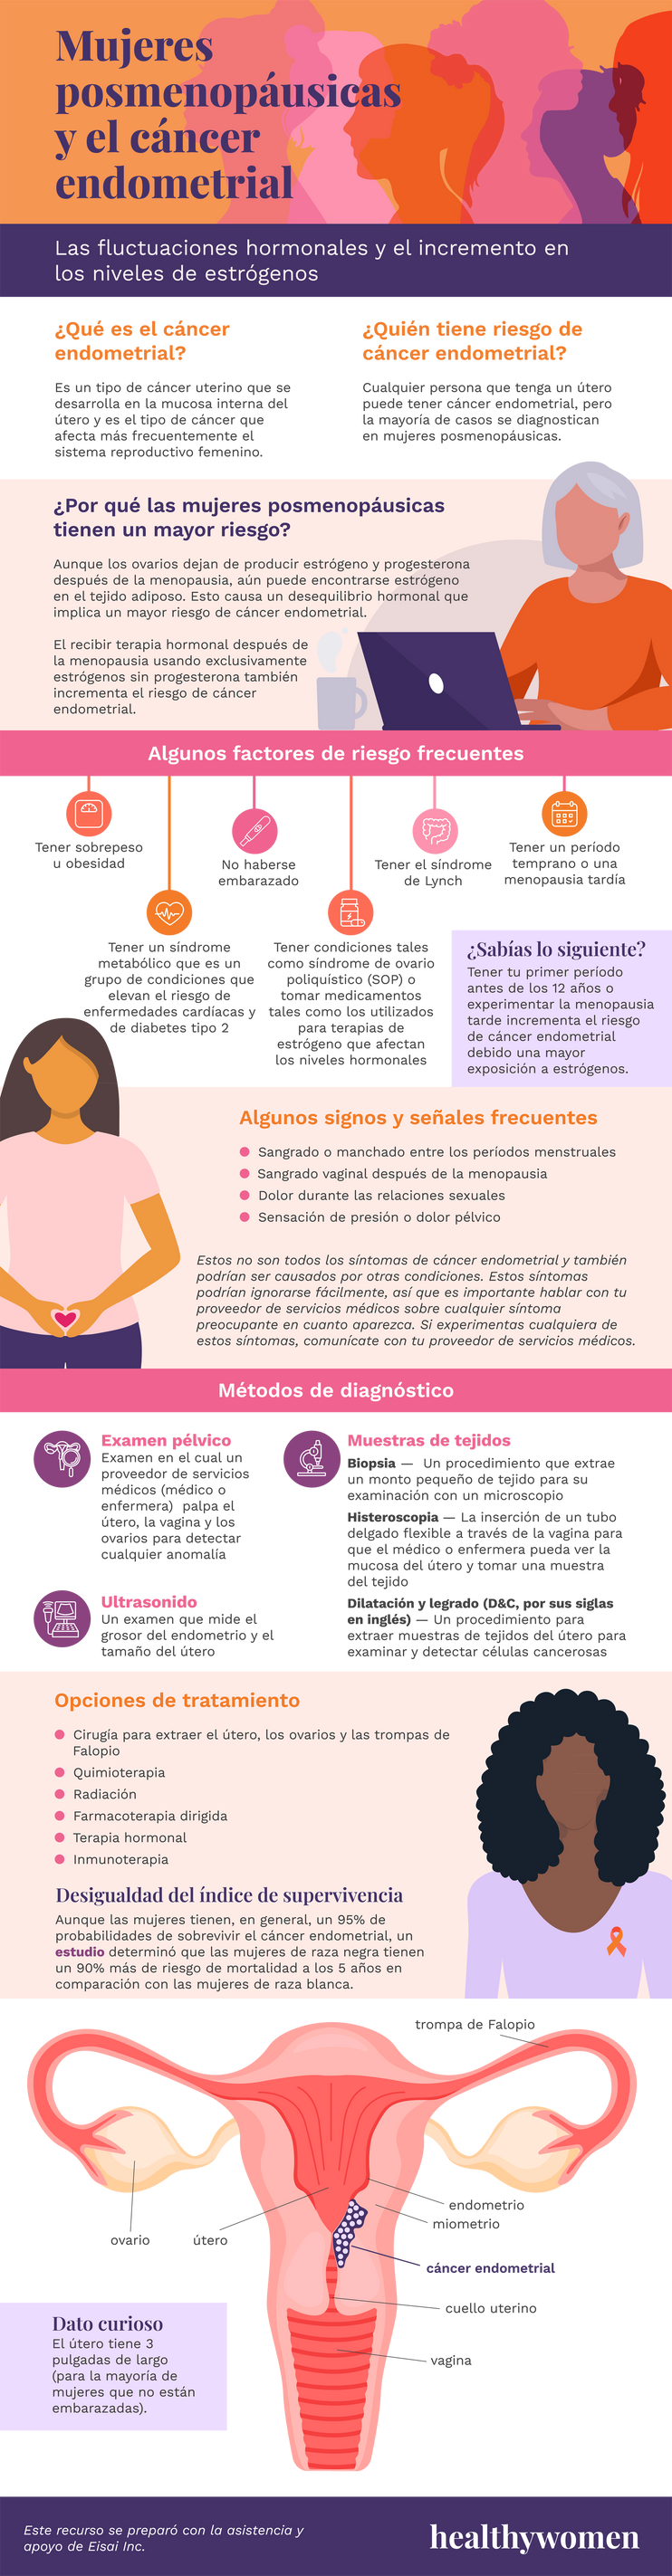 sintomas de cancer de utero